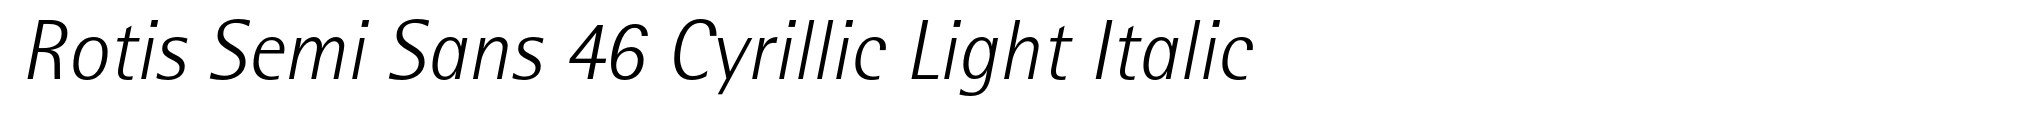 Rotis Semi Sans 46 Cyrillic Light Italic image